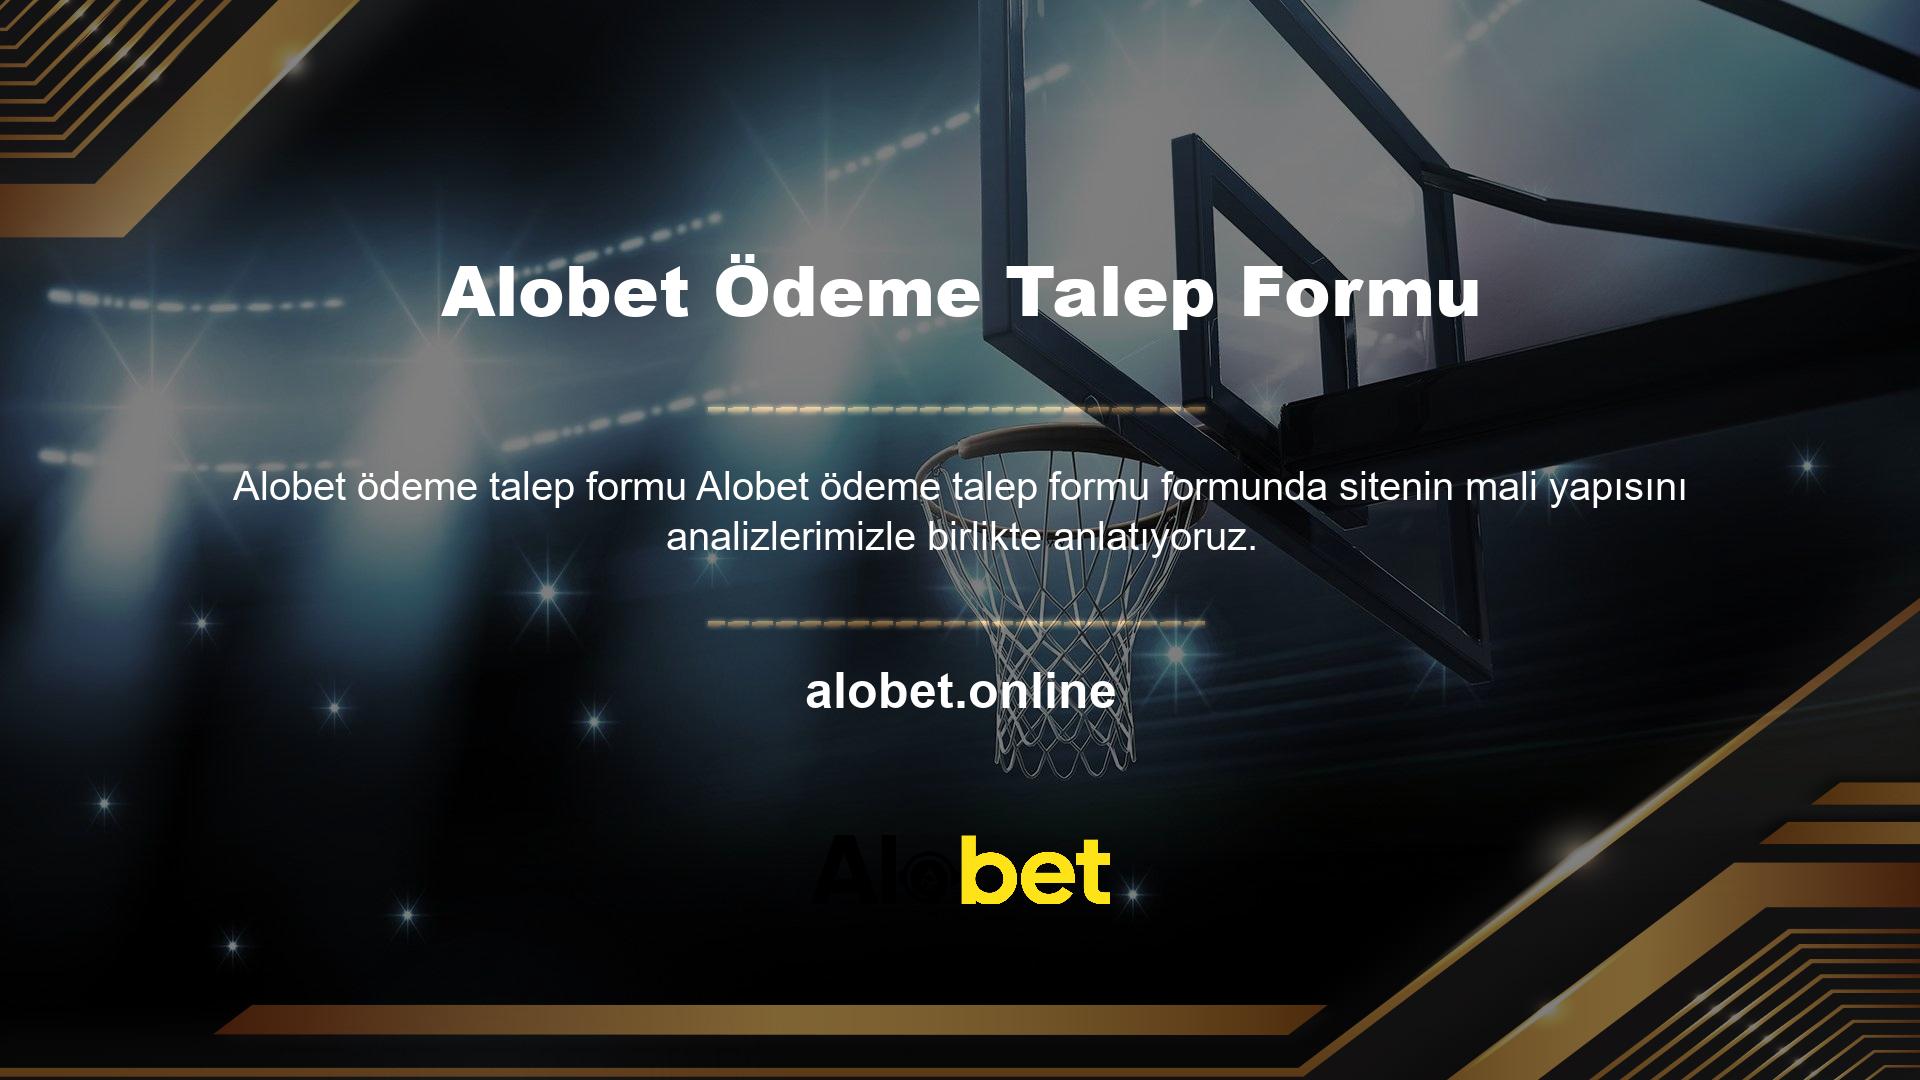 Alobet platformu en eski ve en köklü casino sitelerinden biridir